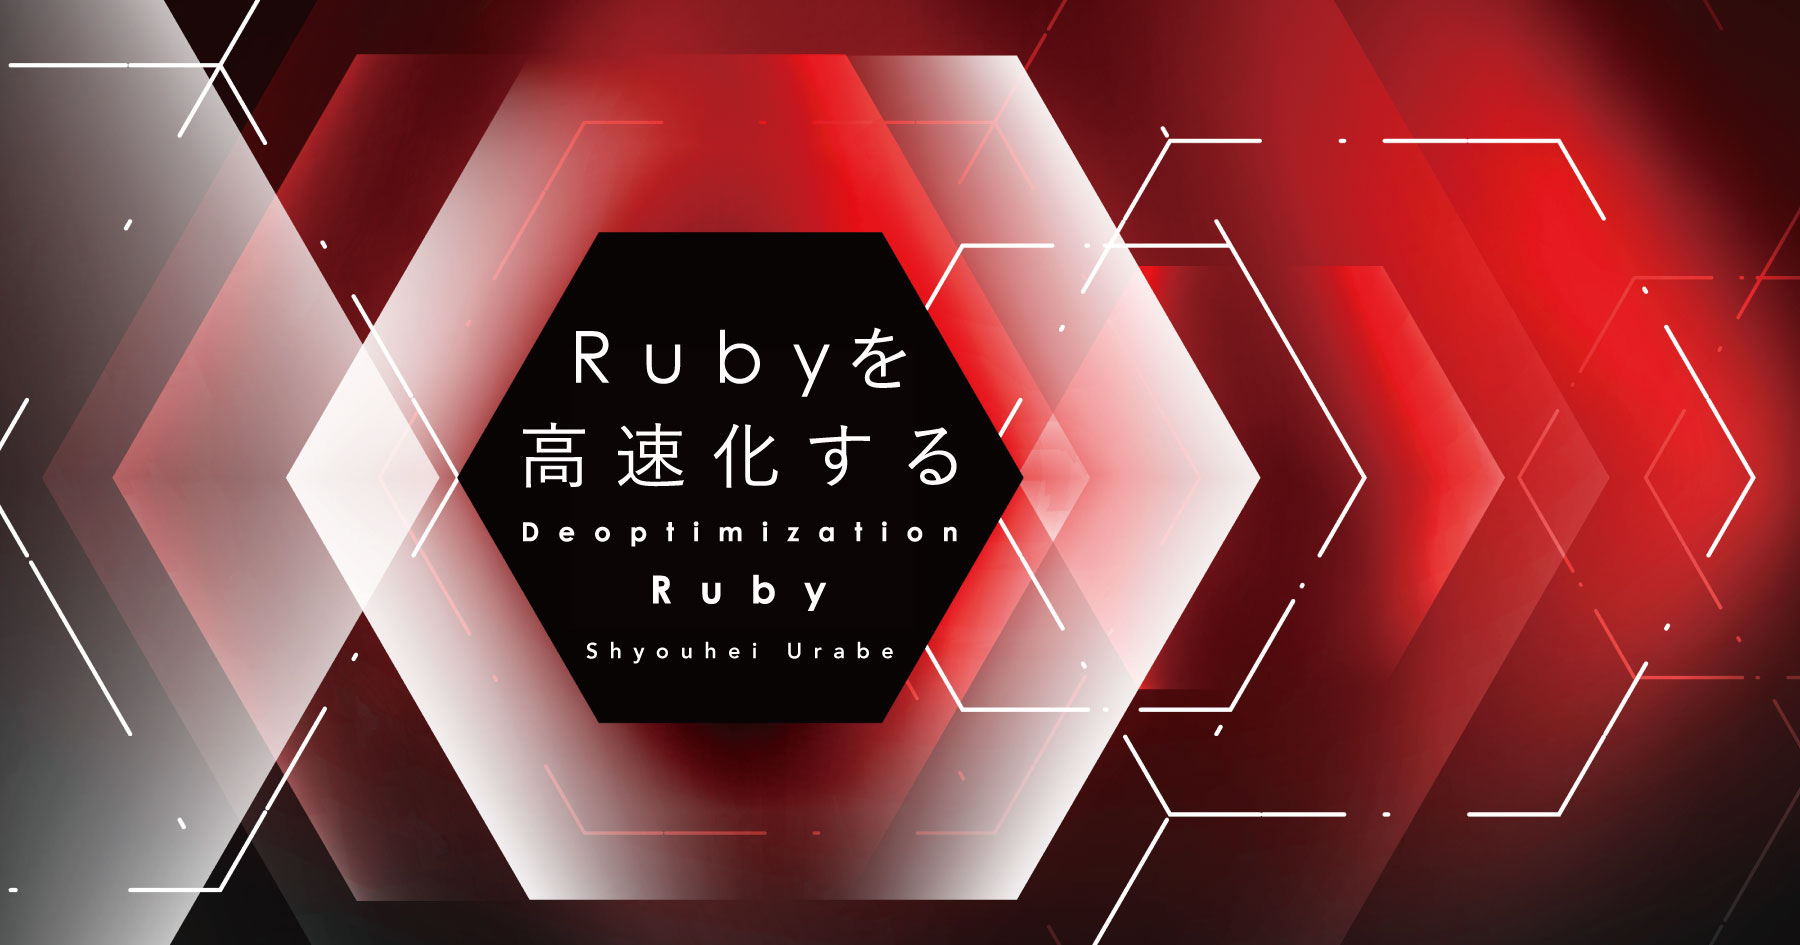 いかにしてRubyを高速化するか？ コミッター・卜部昌平が挑んだ「Deoptimization Ruby」の軌跡